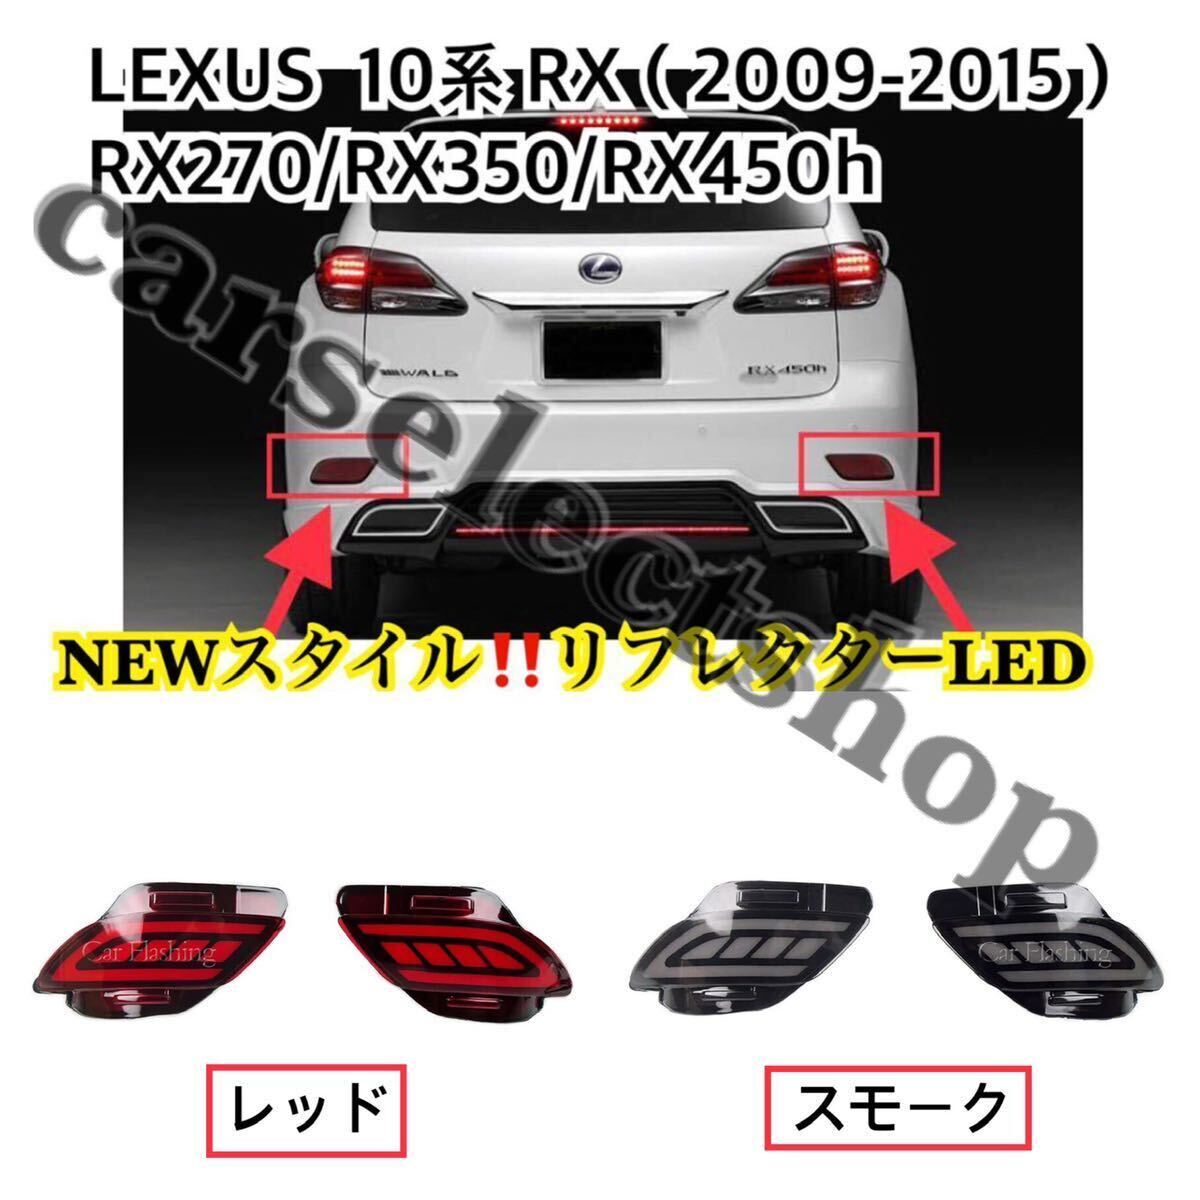 NEWスタイル/カラー選択可能/LEXUS 10系RX リフレクターLED シーケンシャル 左右セット/レクサス /[2009-2015]テールライトう流れるLED_画像2